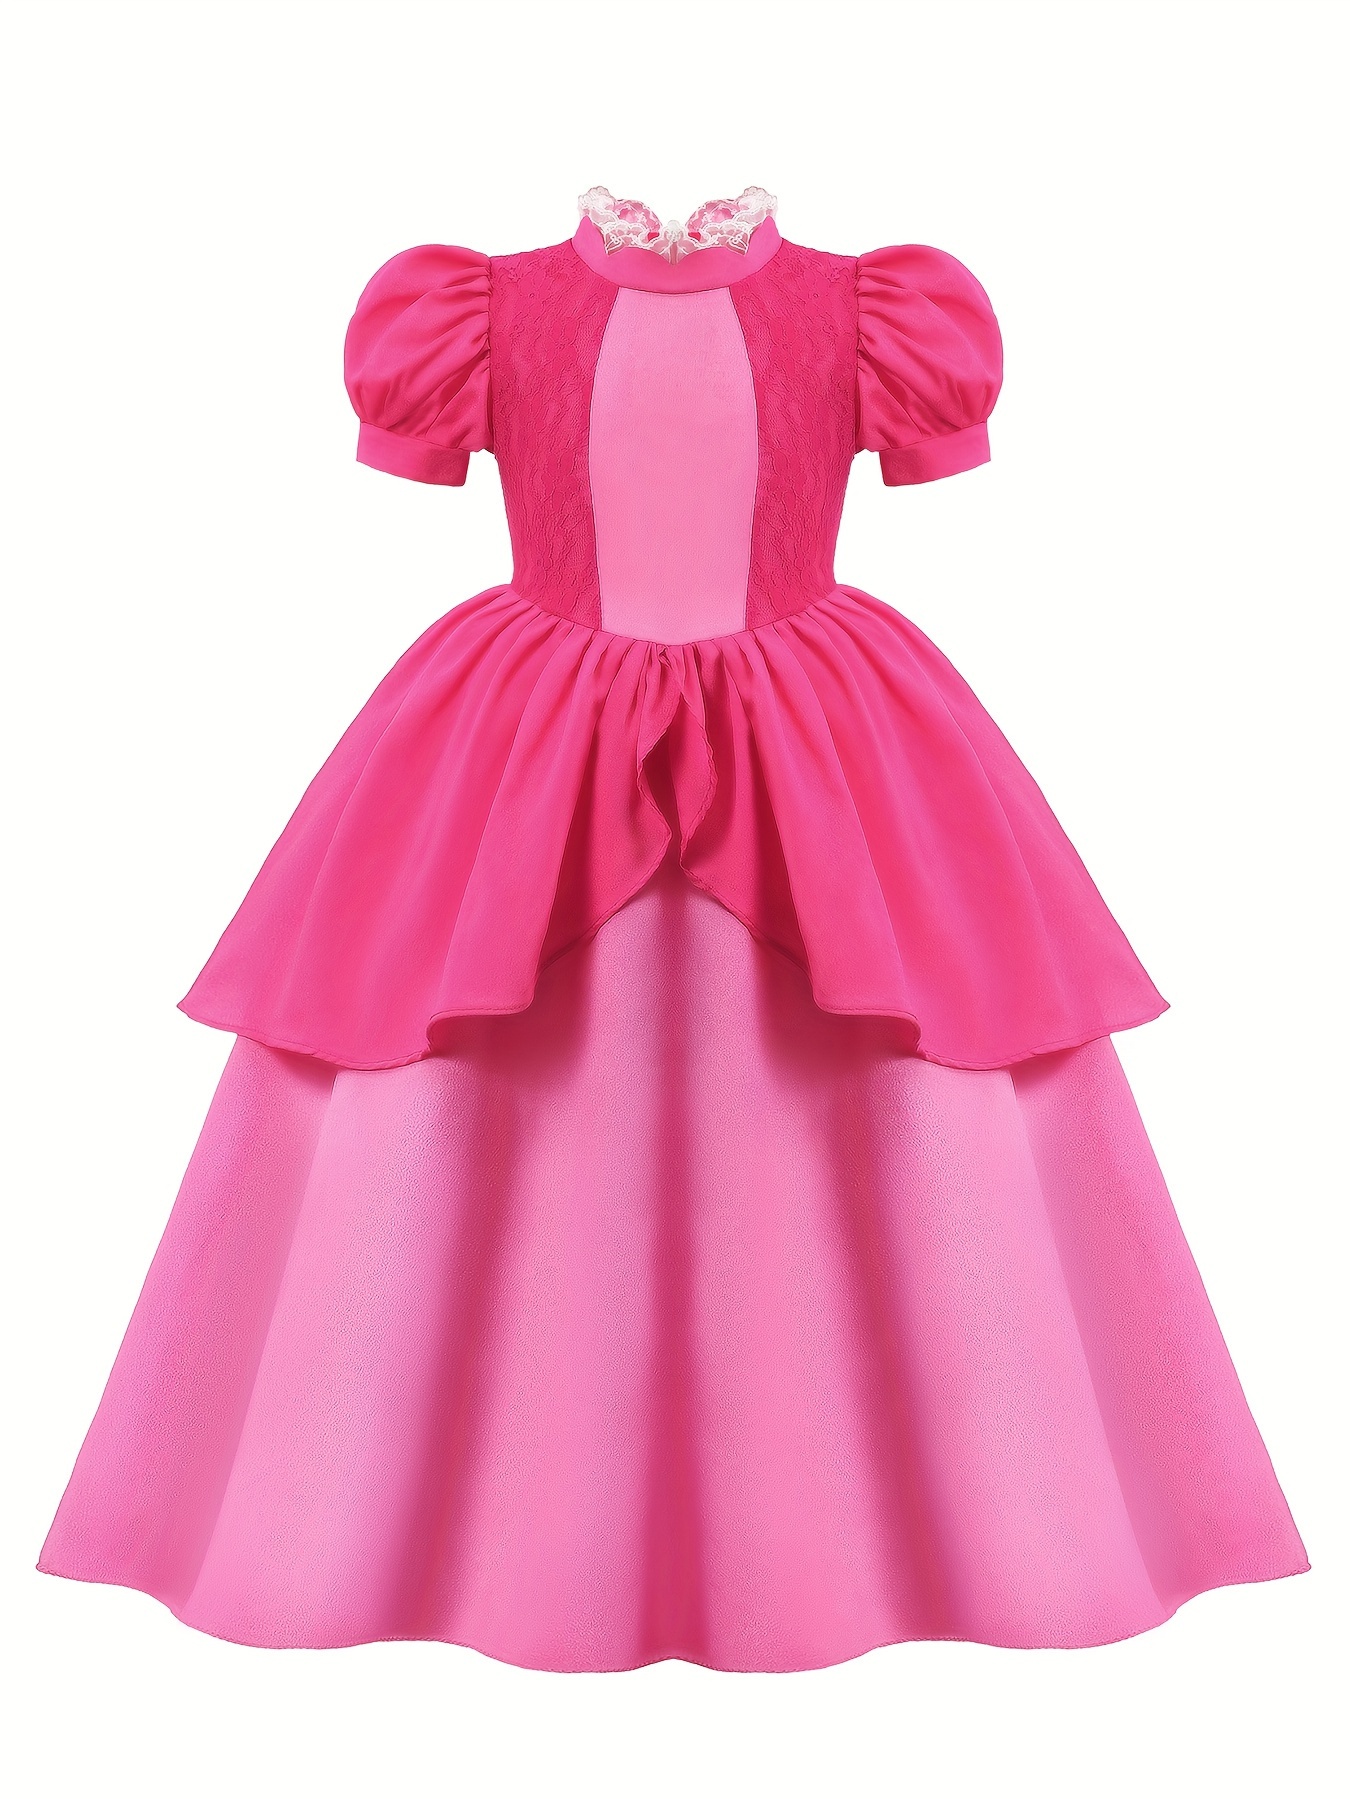 Costume e accessori principessa rosa bambina